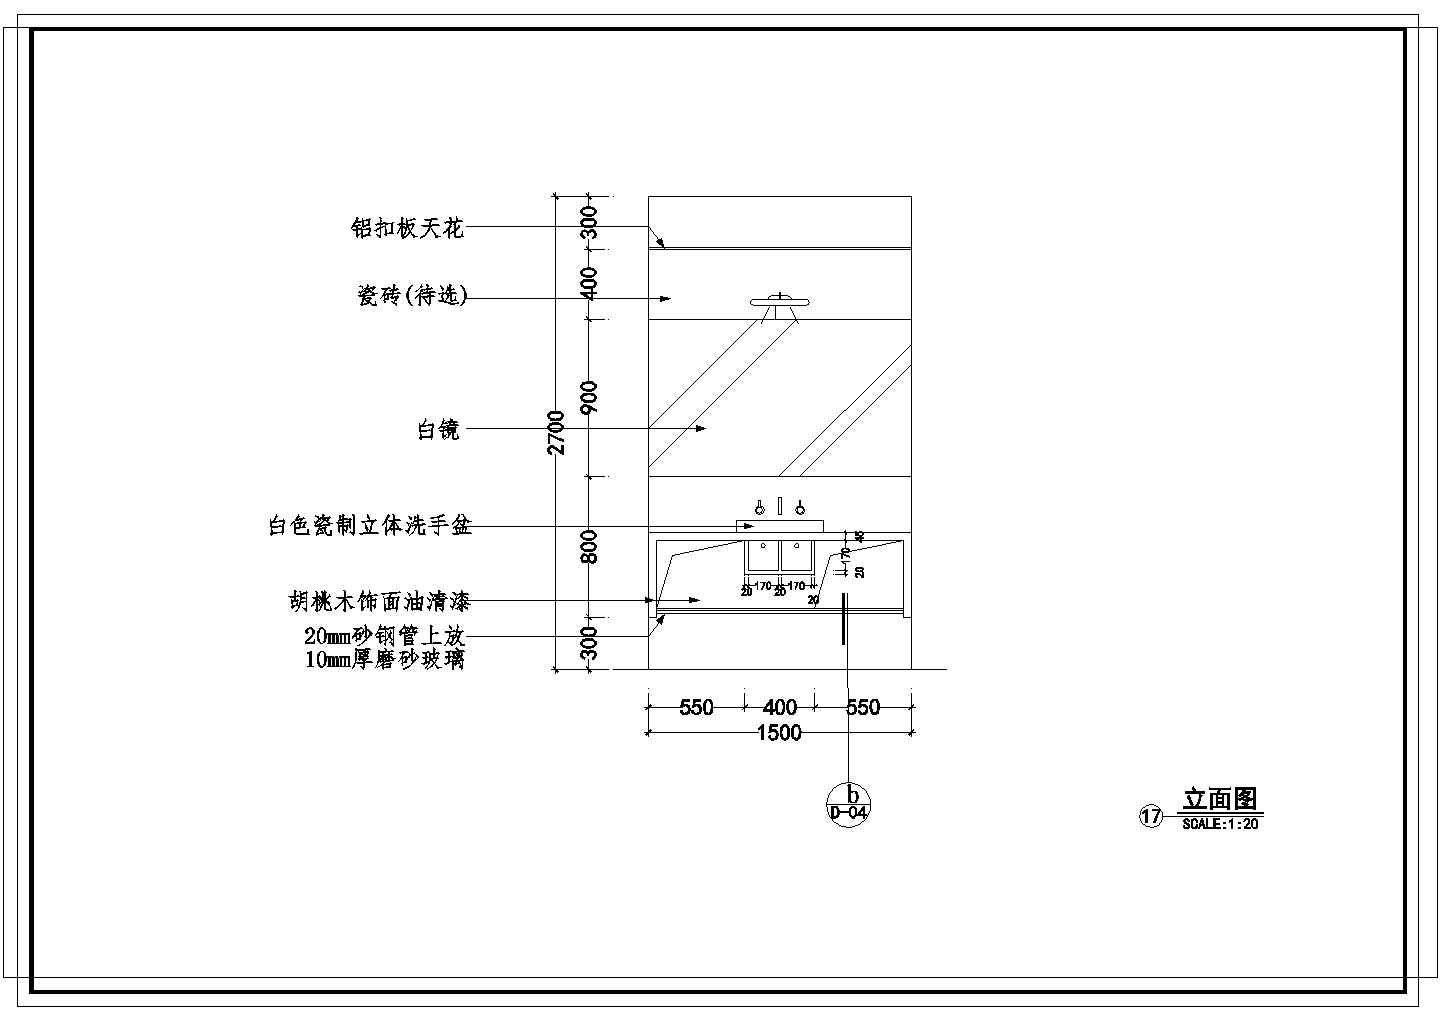 【四川】某两居家庭装修设计施工图